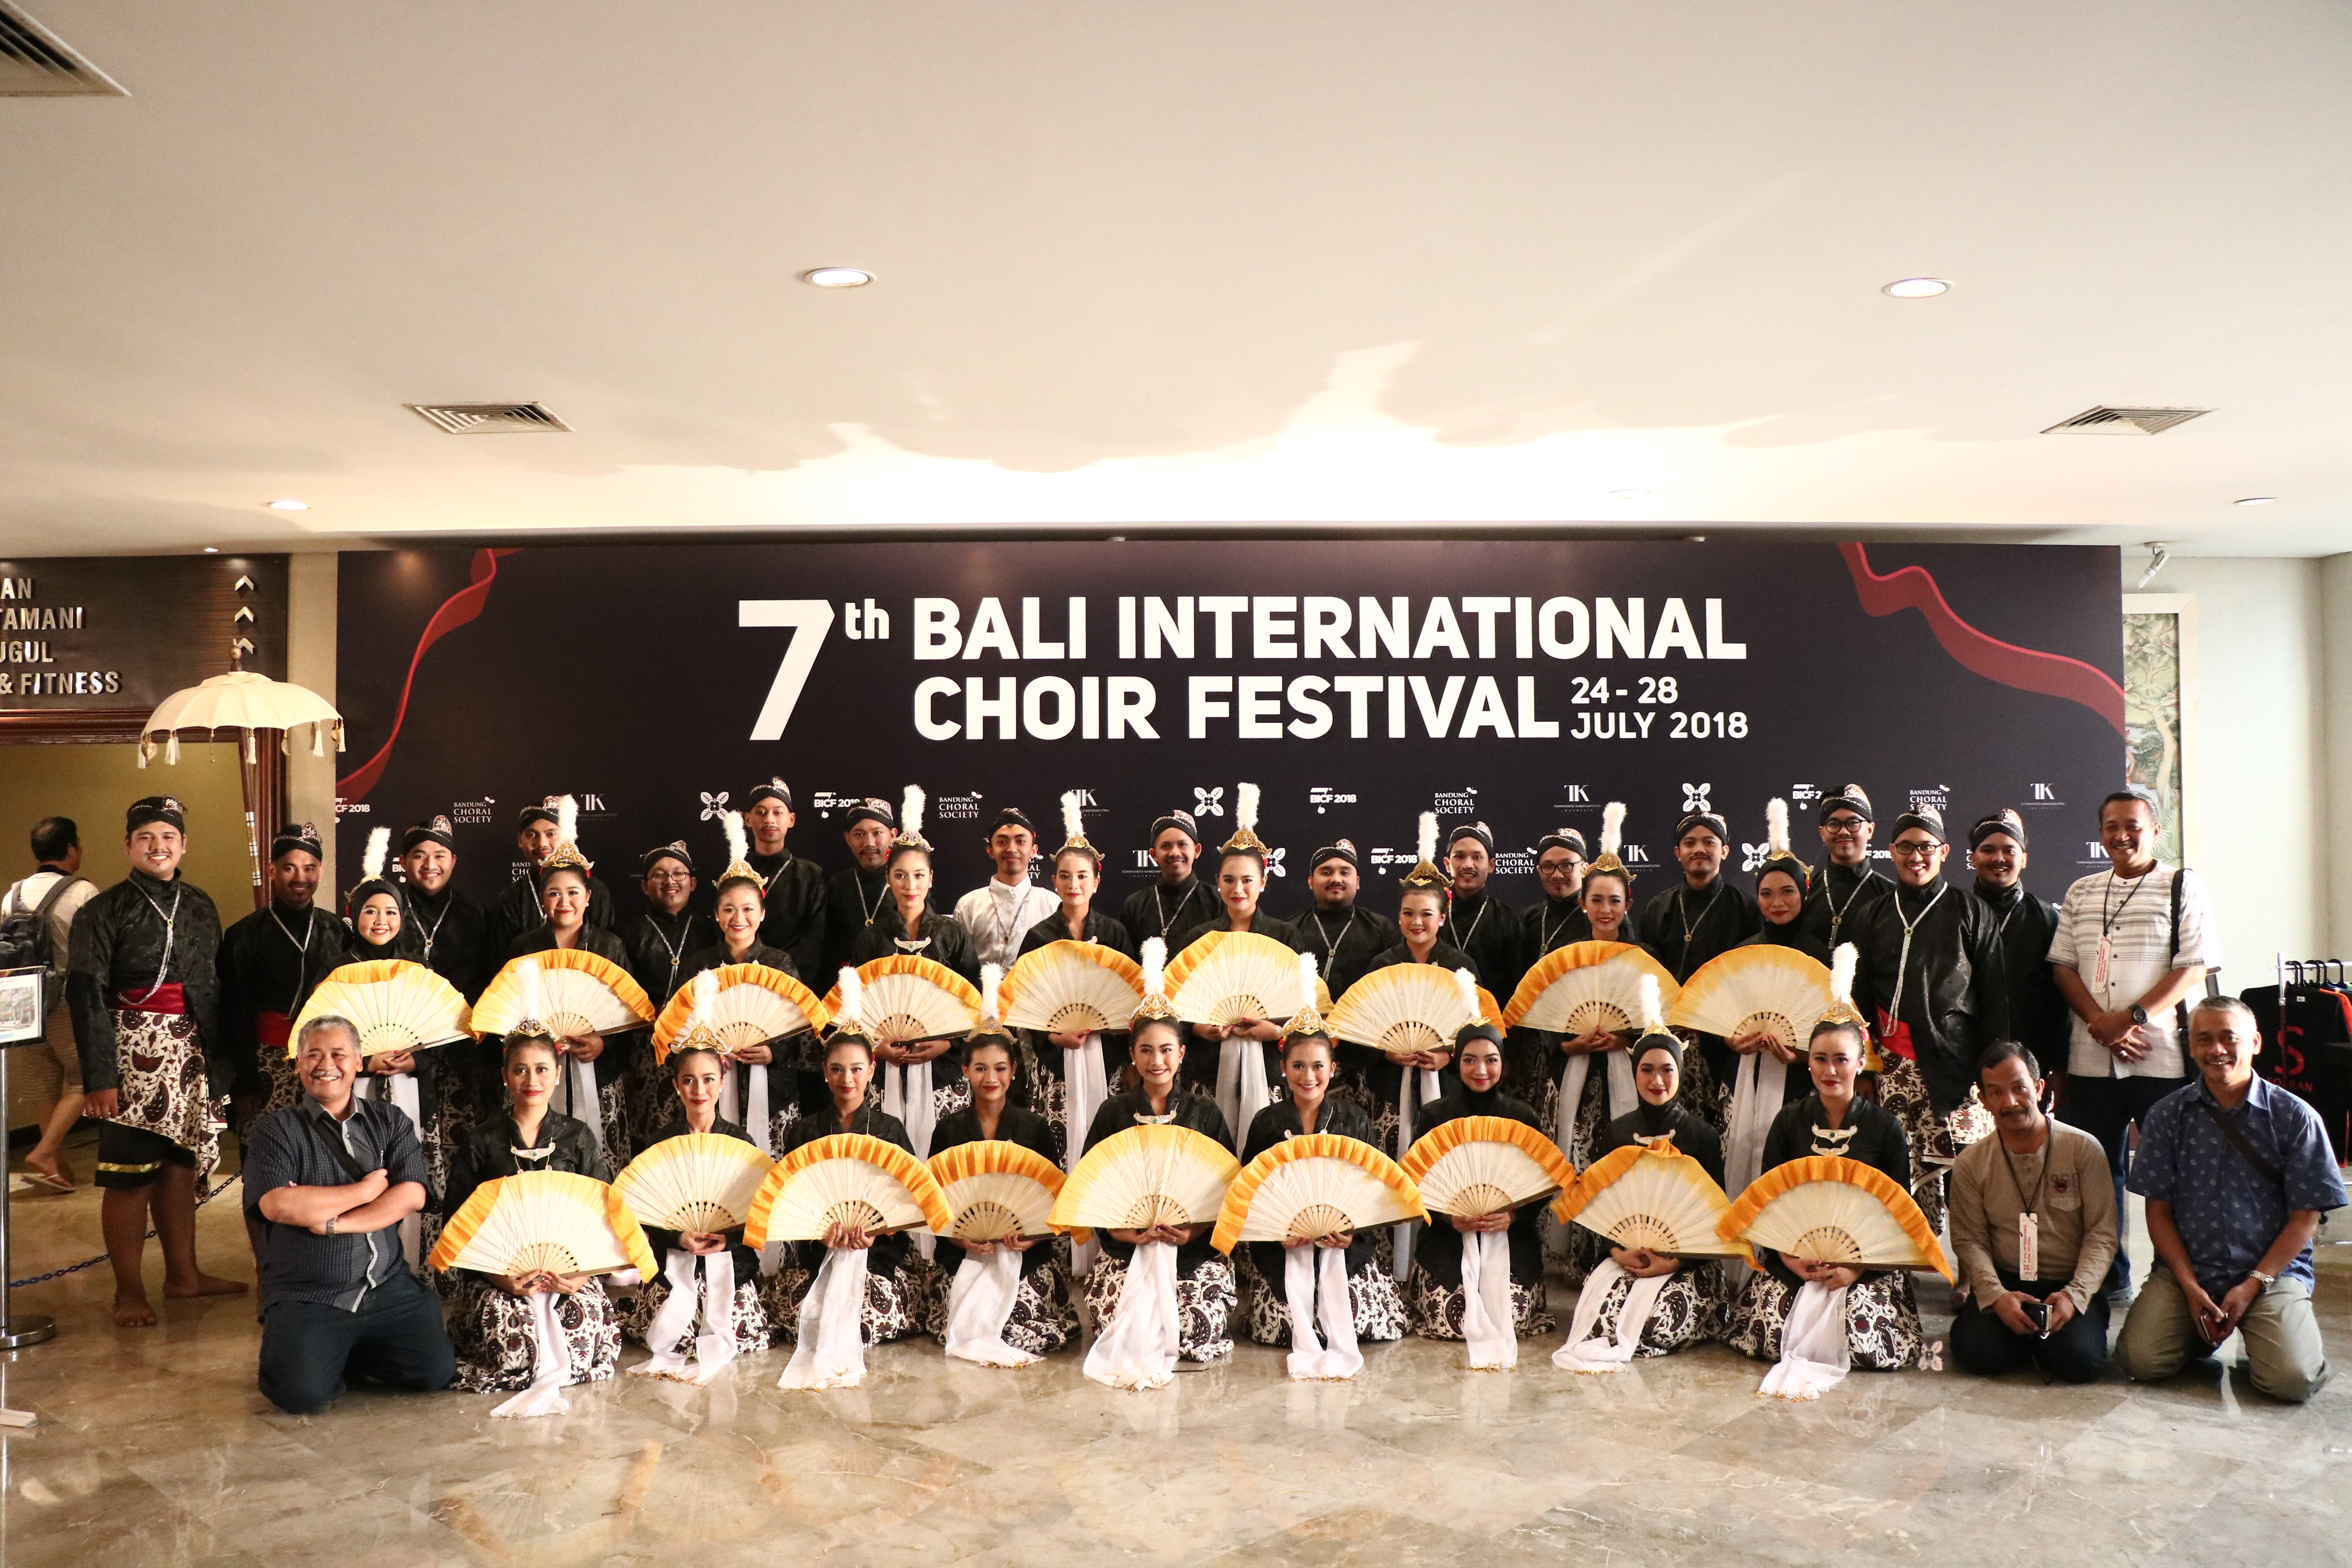 Foto 7th Bali International Choir Festival